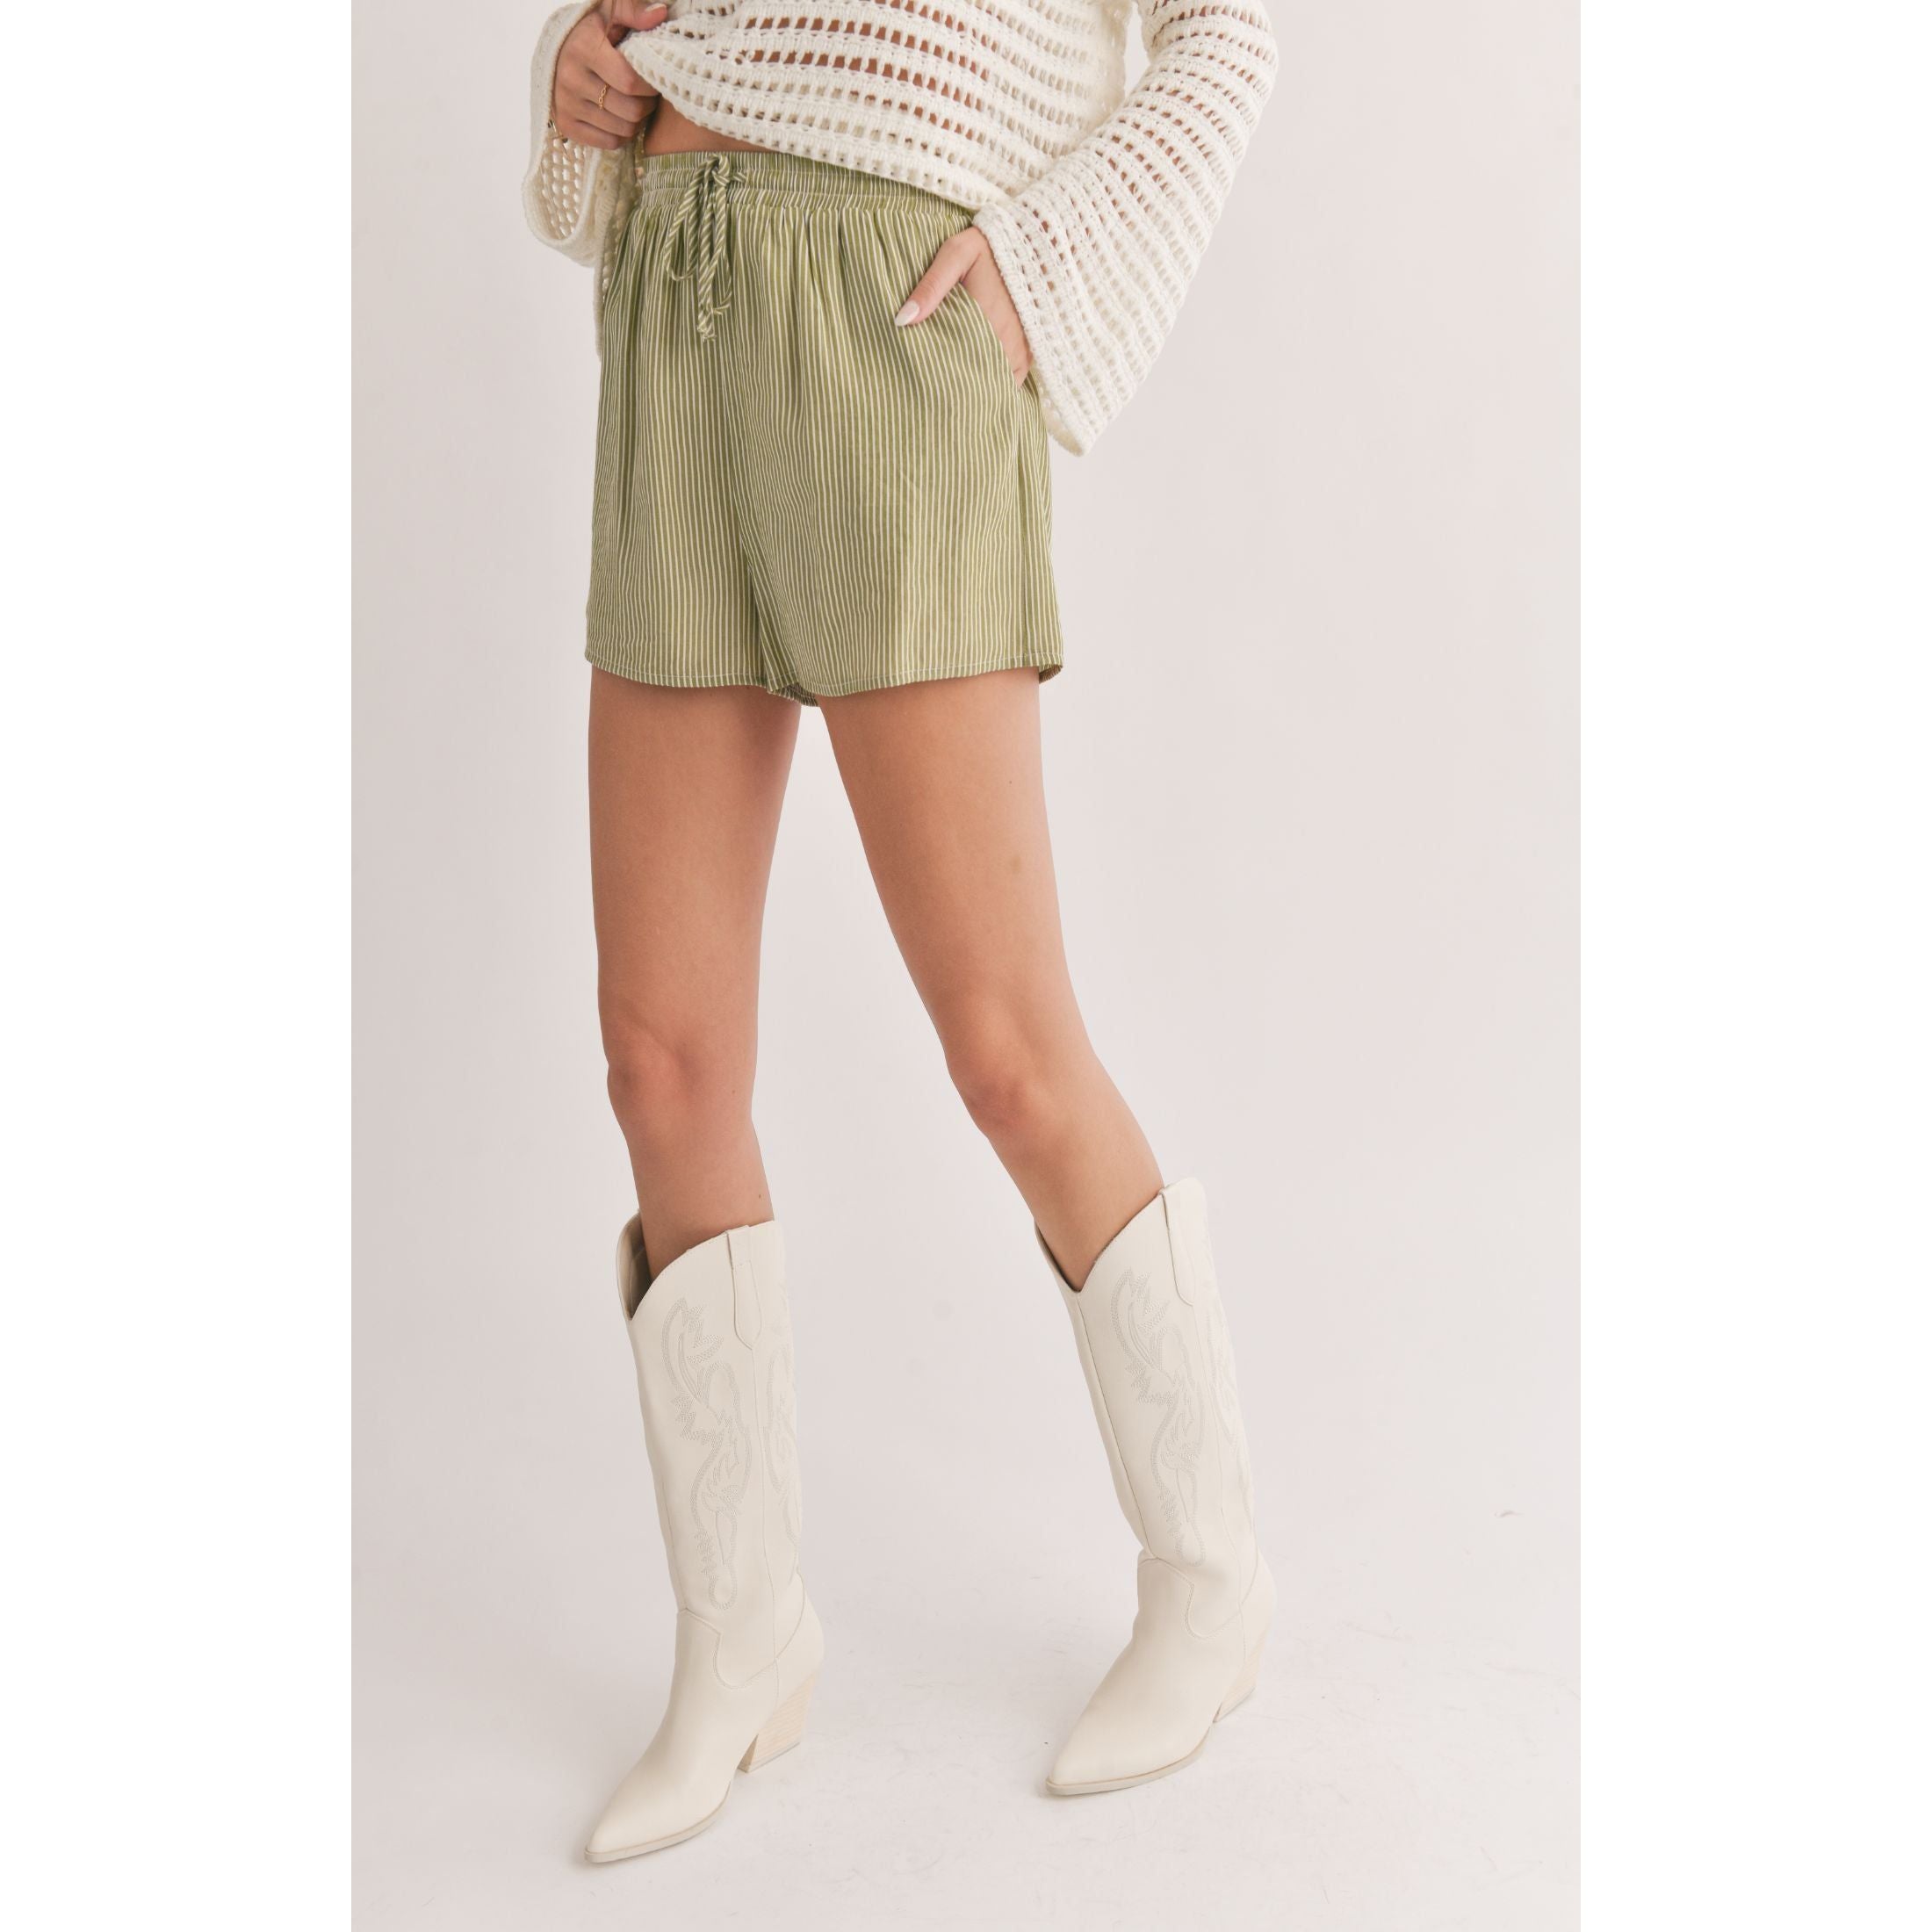 Sadie & Sage - Oasis Shorts in Green Stripe